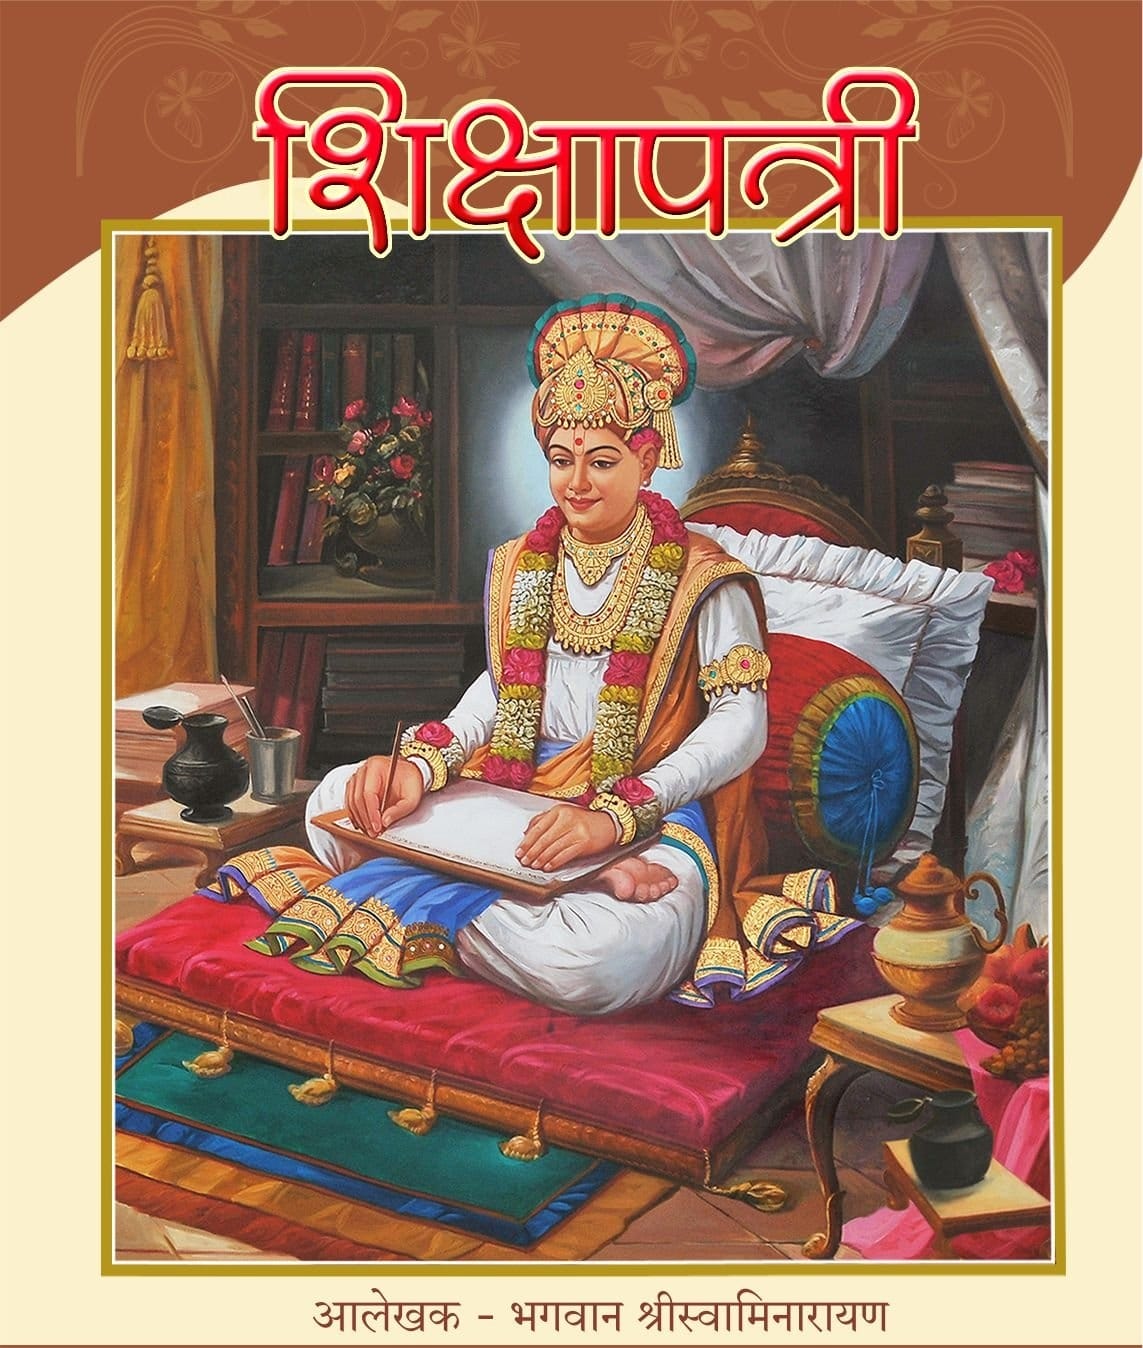 Shikshapatri janma jayanti: જીવન જીવવાની શીખ આપતી શિક્ષાપત્રીની 192મી જયંતિ, 212 જેટલા છે શ્લોક